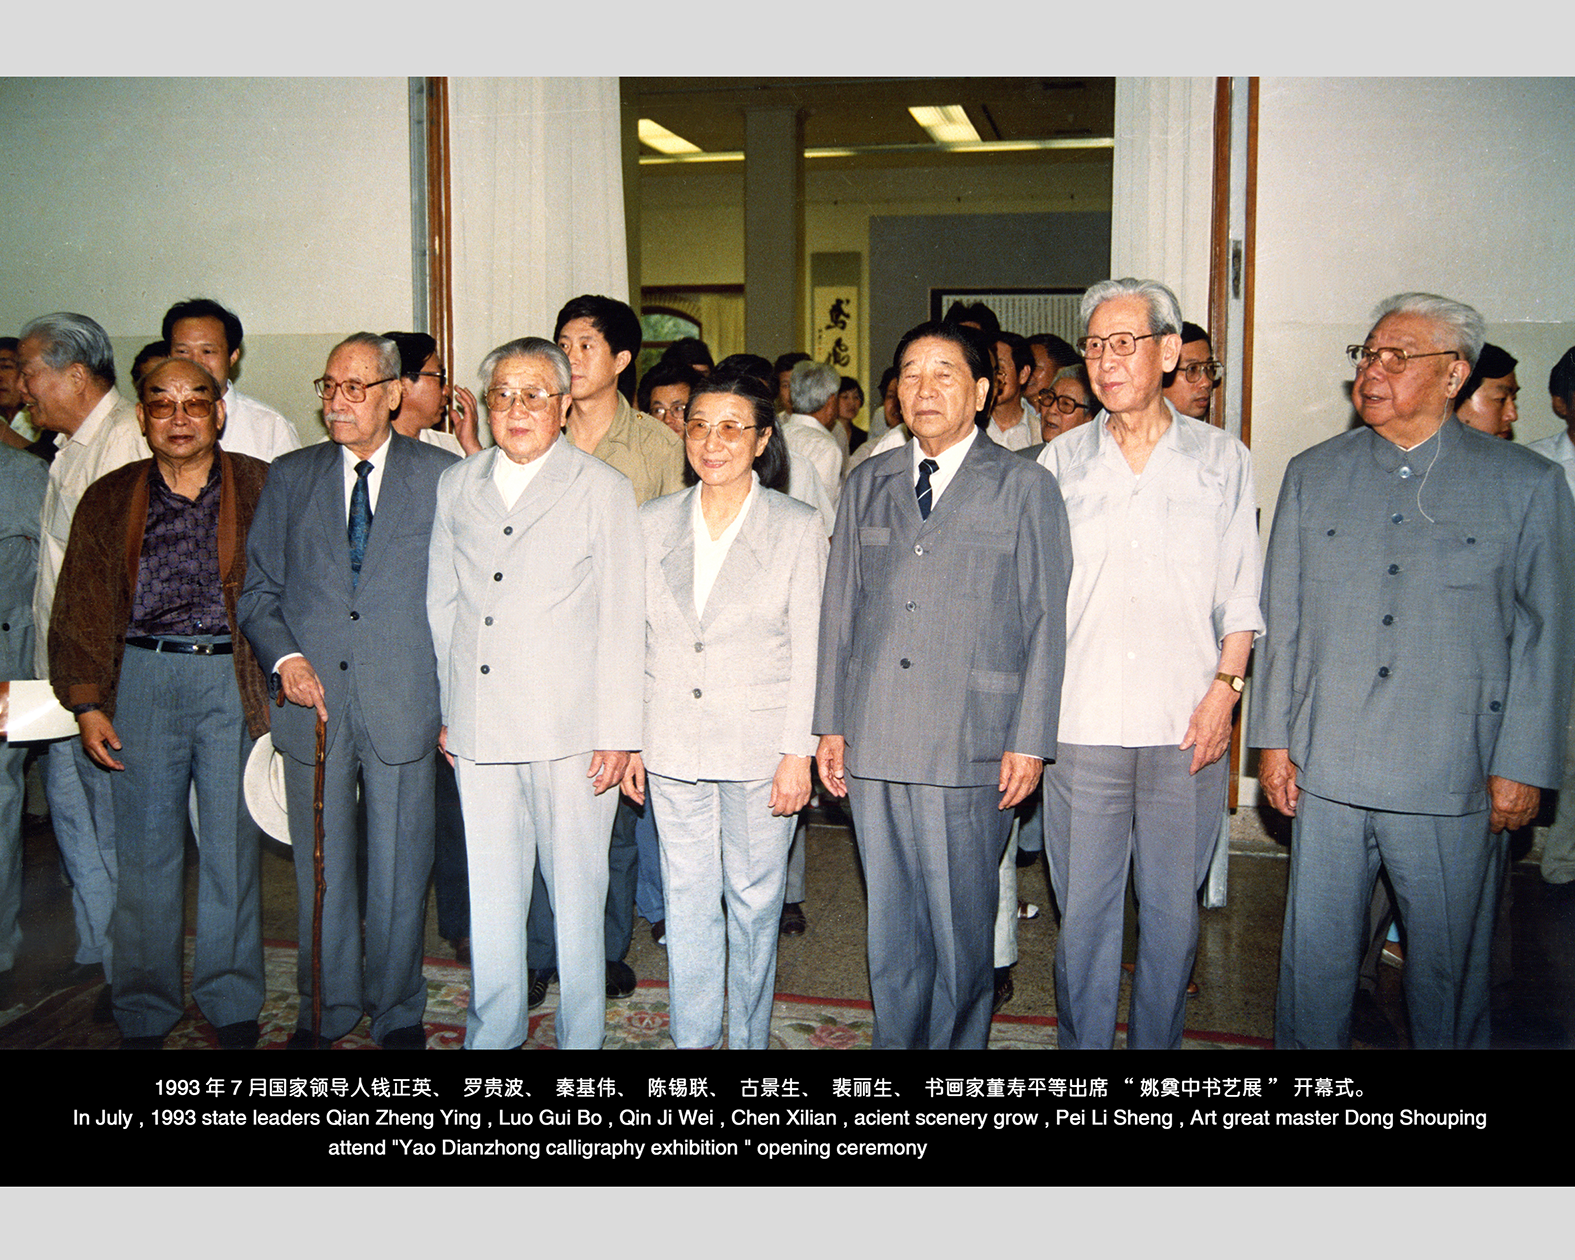 1993年6月26日中国美术馆“姚奠中书艺展”开幕式。右起为陈锡联、姚奠中、秦基伟、钱正英罗